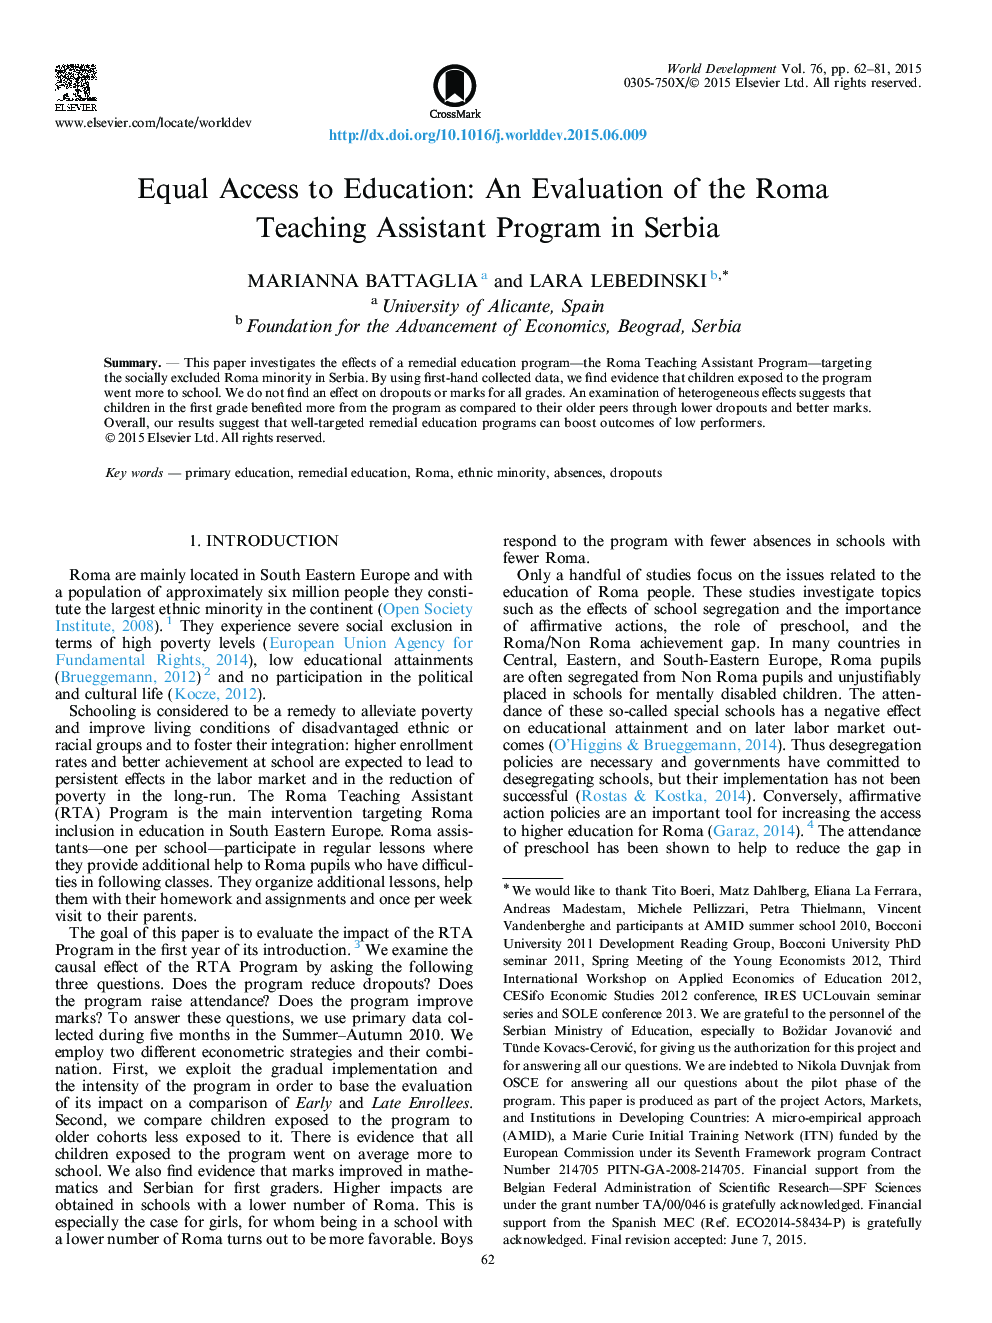 دسترسی برابر به تحصیل: ارزیابی برنامه دستیار آموزش رم در صربستان 